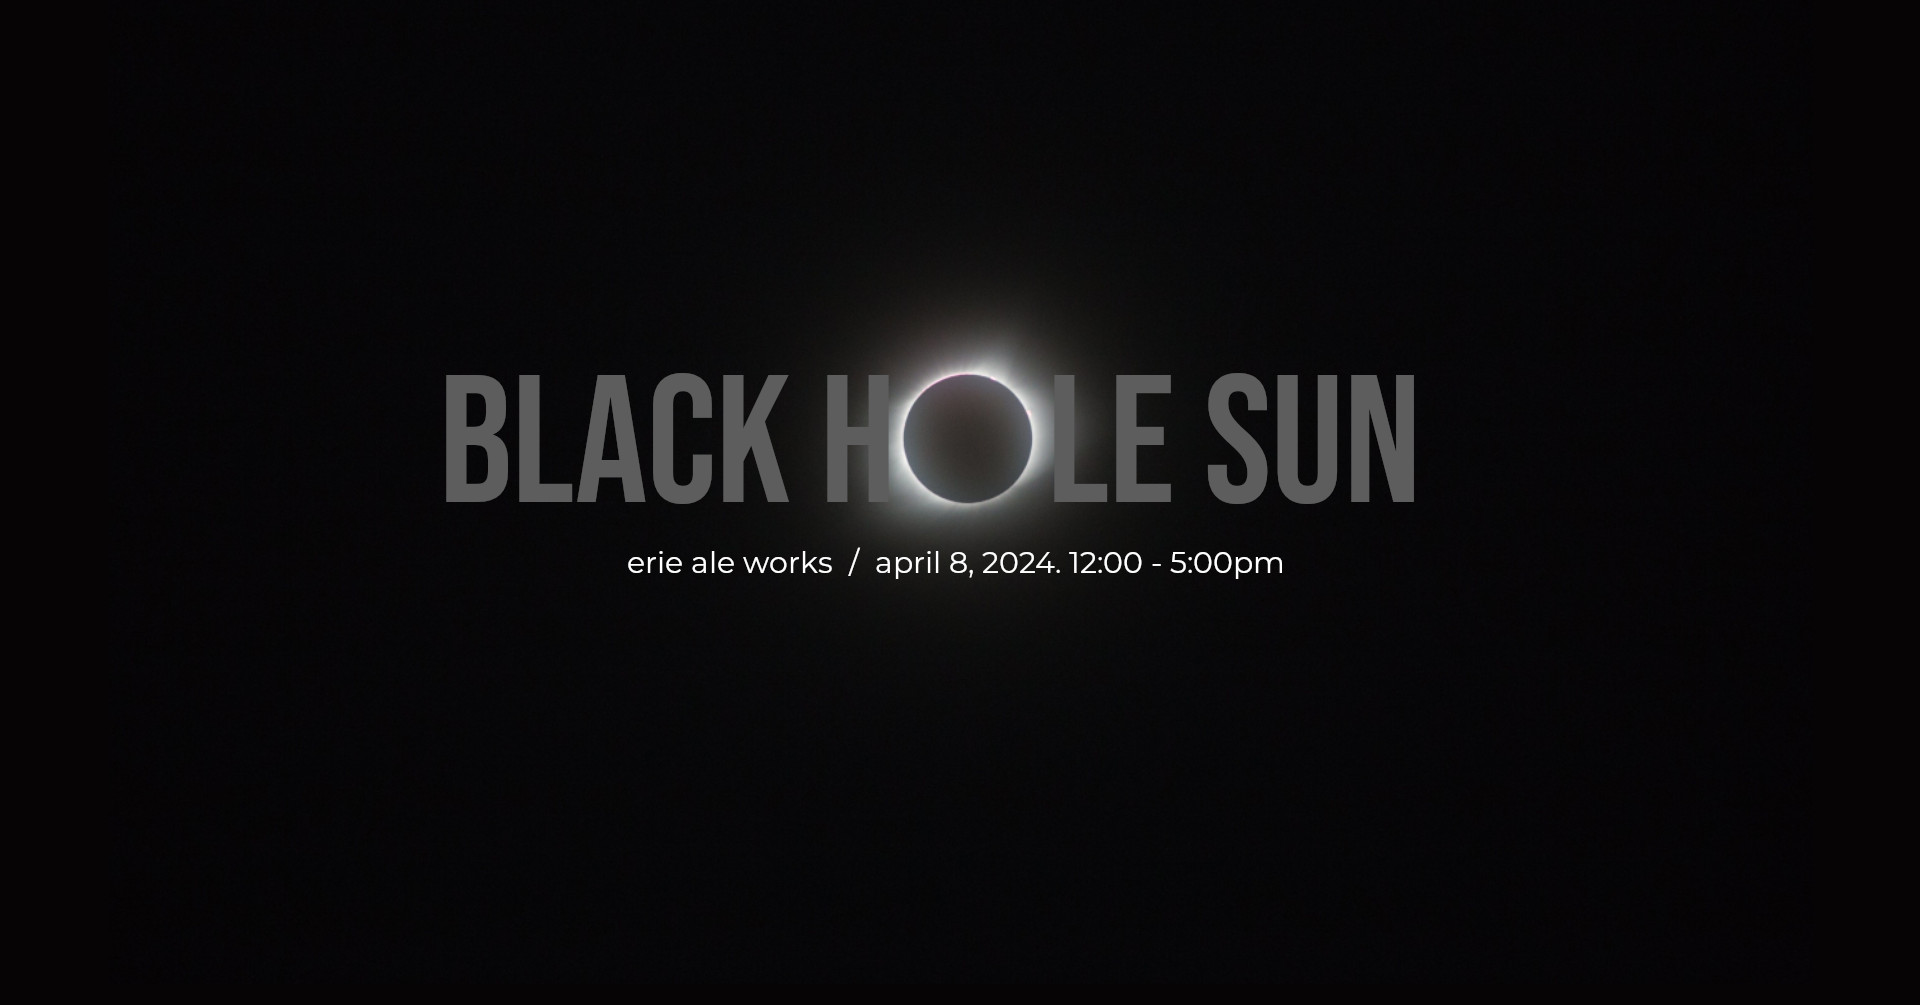 Black Hole Sun: Eclipse Parking Lot Party